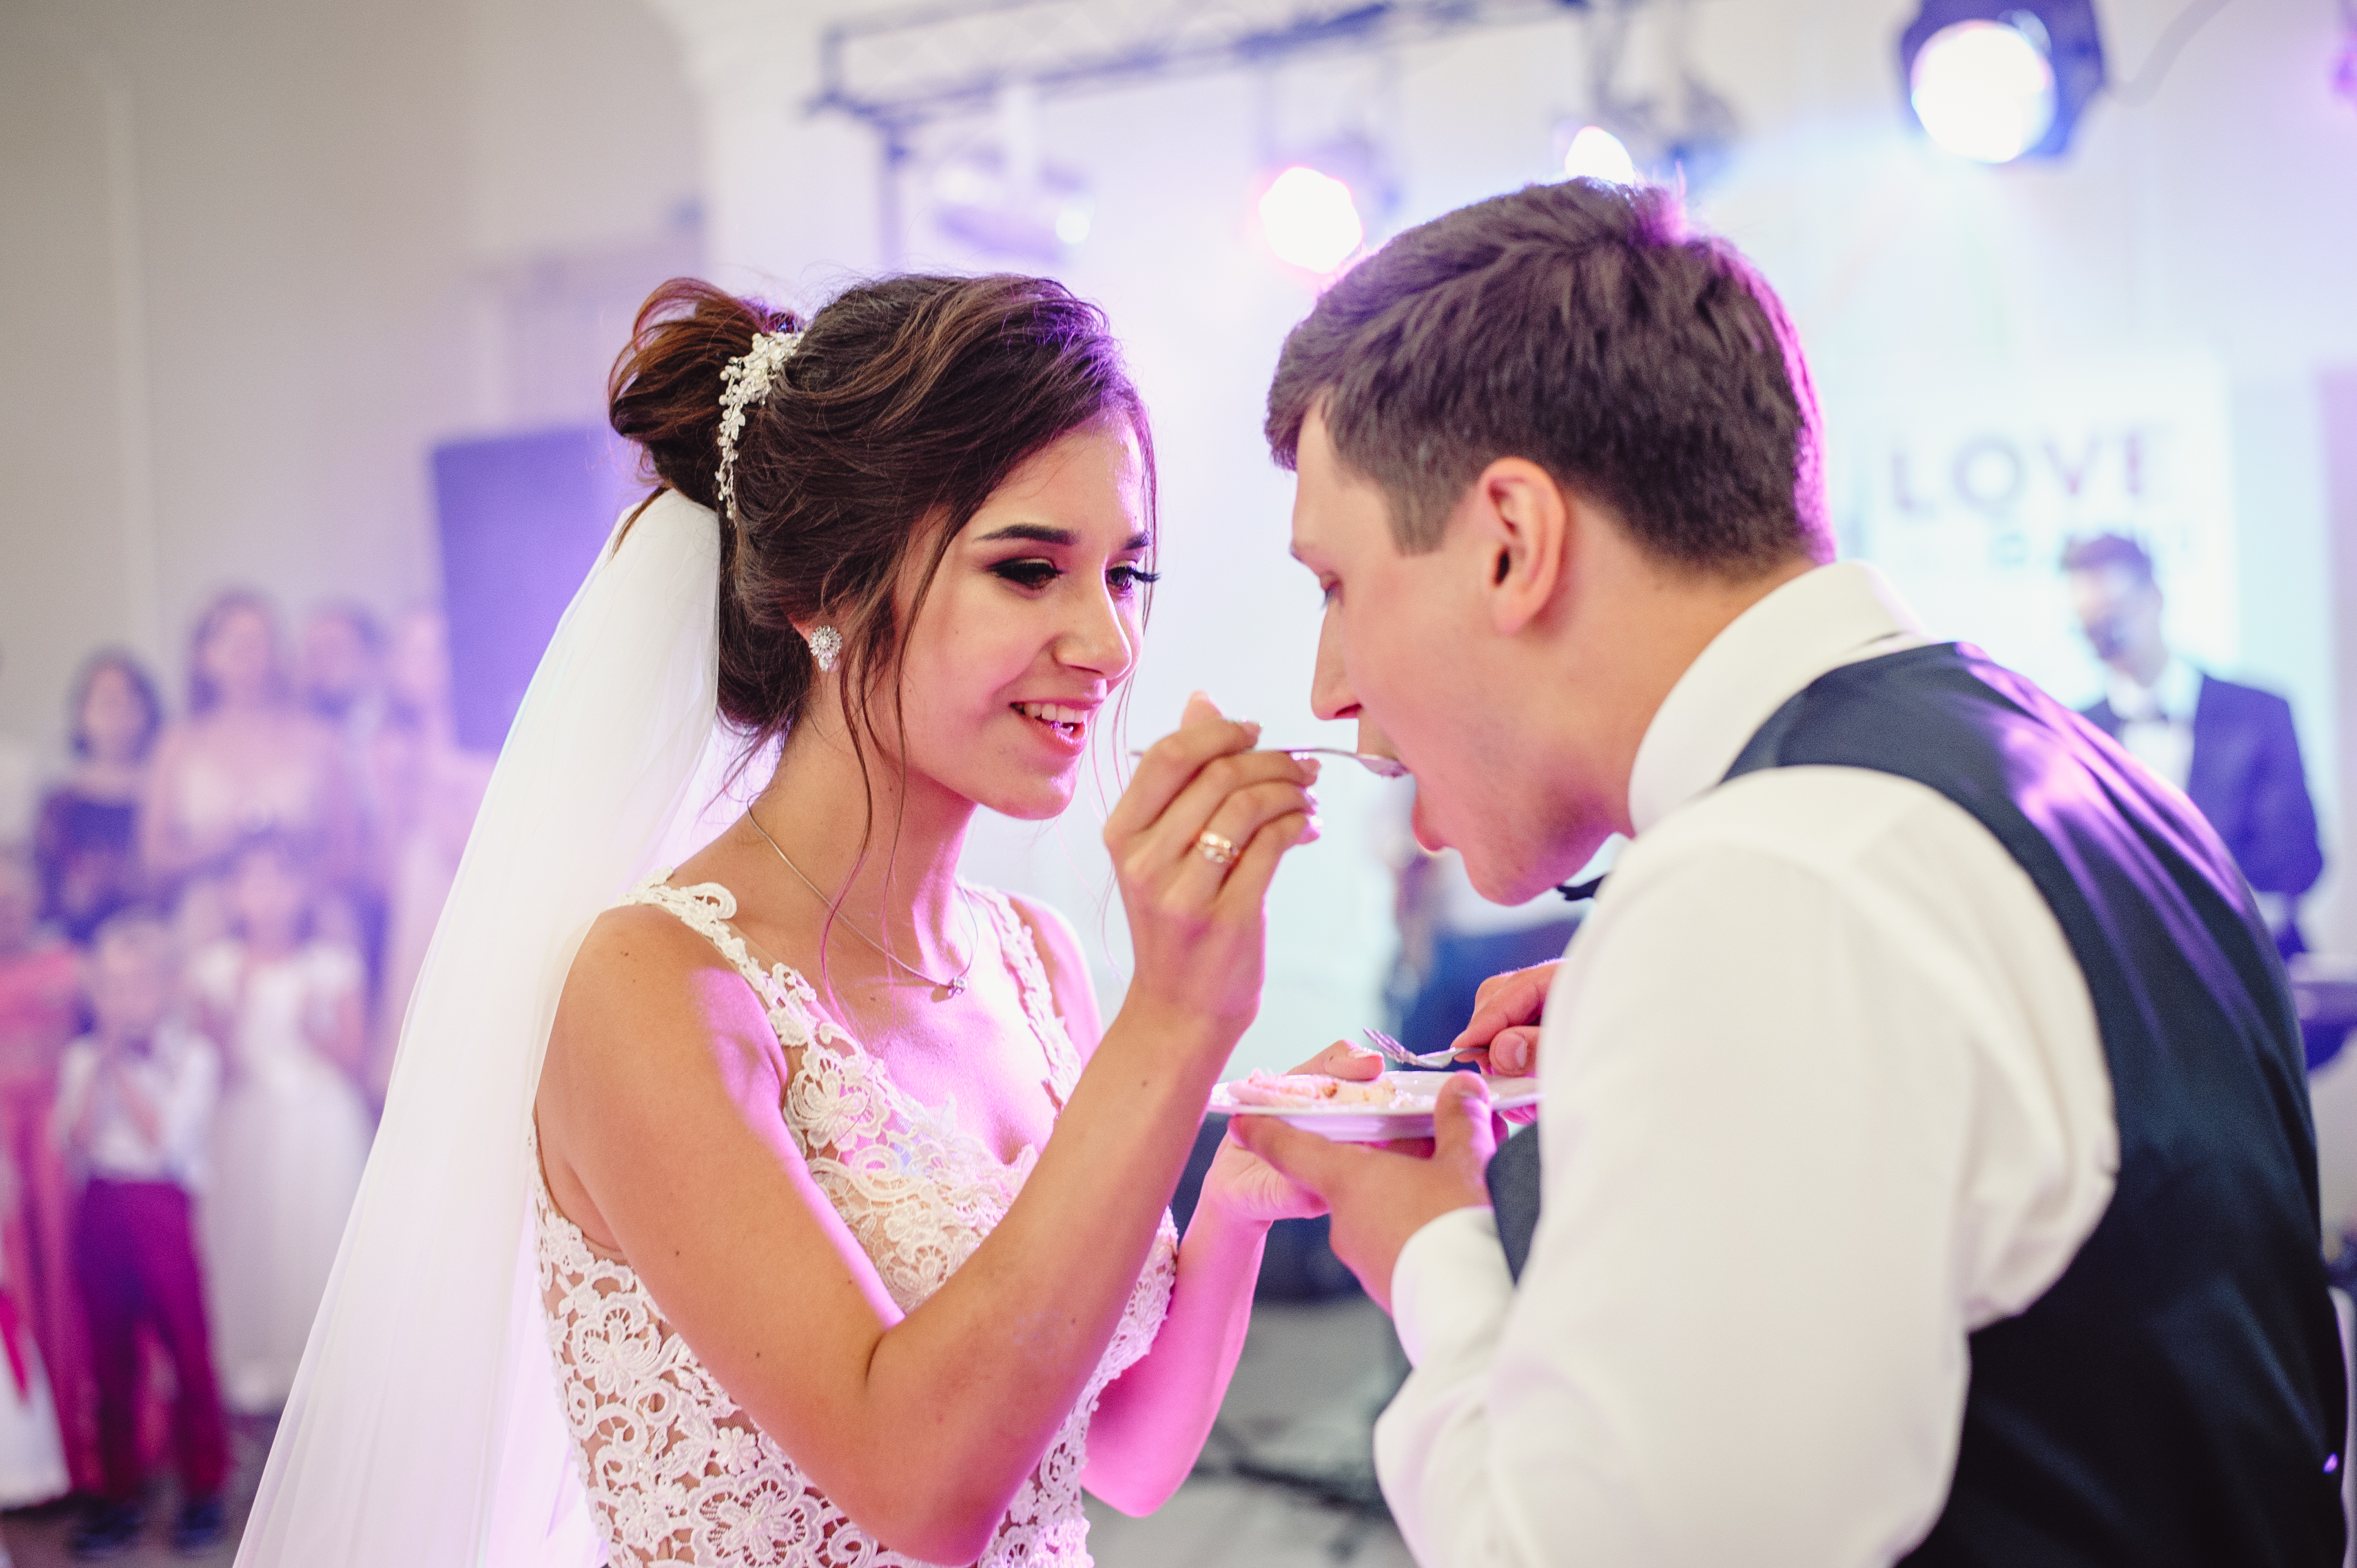 Une mariée donne un morceau de gâteau à son marié | Source : Shutterstock